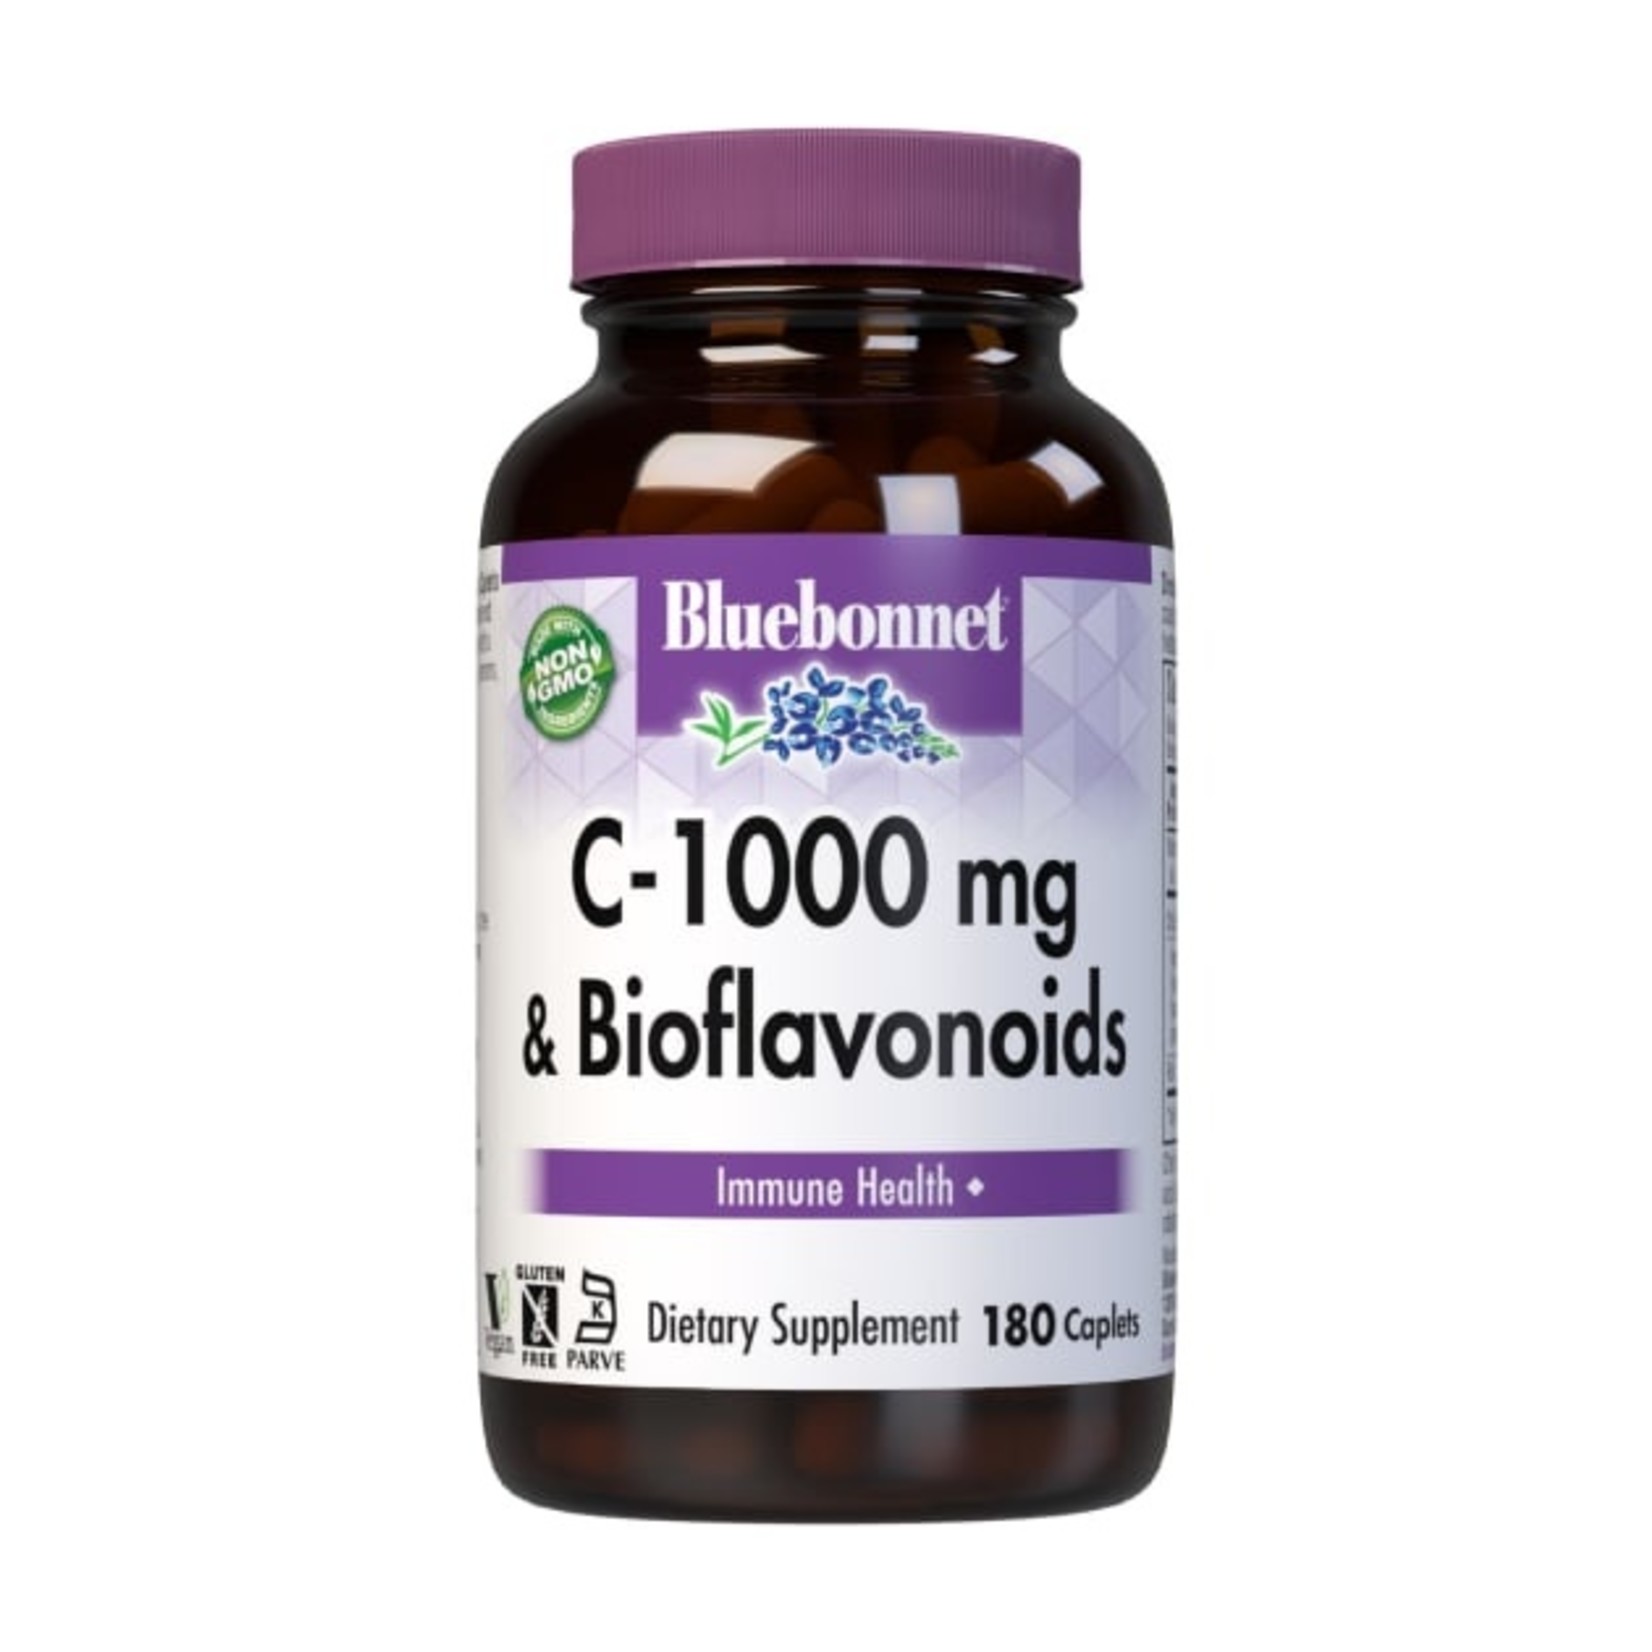 Bluebonnet Bluebonnet - C-1000 mg Plus Bioflavonoids - 180 Capsules